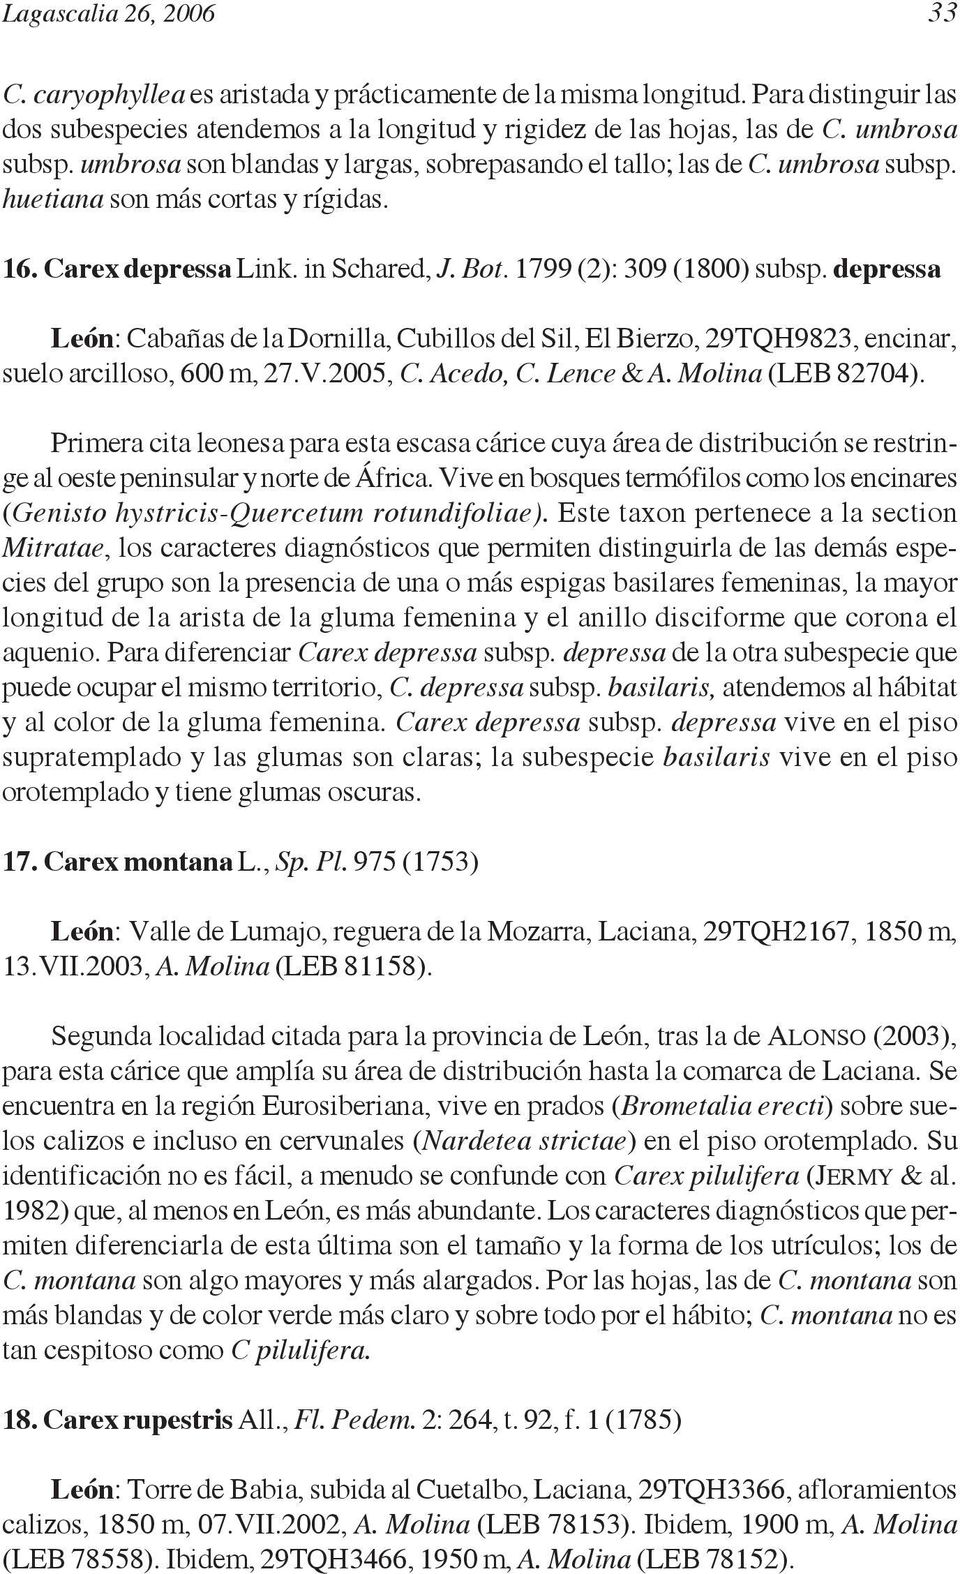 depressa León: Cabañas de la Dornilla, Cubillos del Sil, El Bierzo, 29TQH9823, encinar, suelo arcilloso, 600 m, 27.V.2005, C. Acedo, C. Lence & A. Molina (LEB 82704).